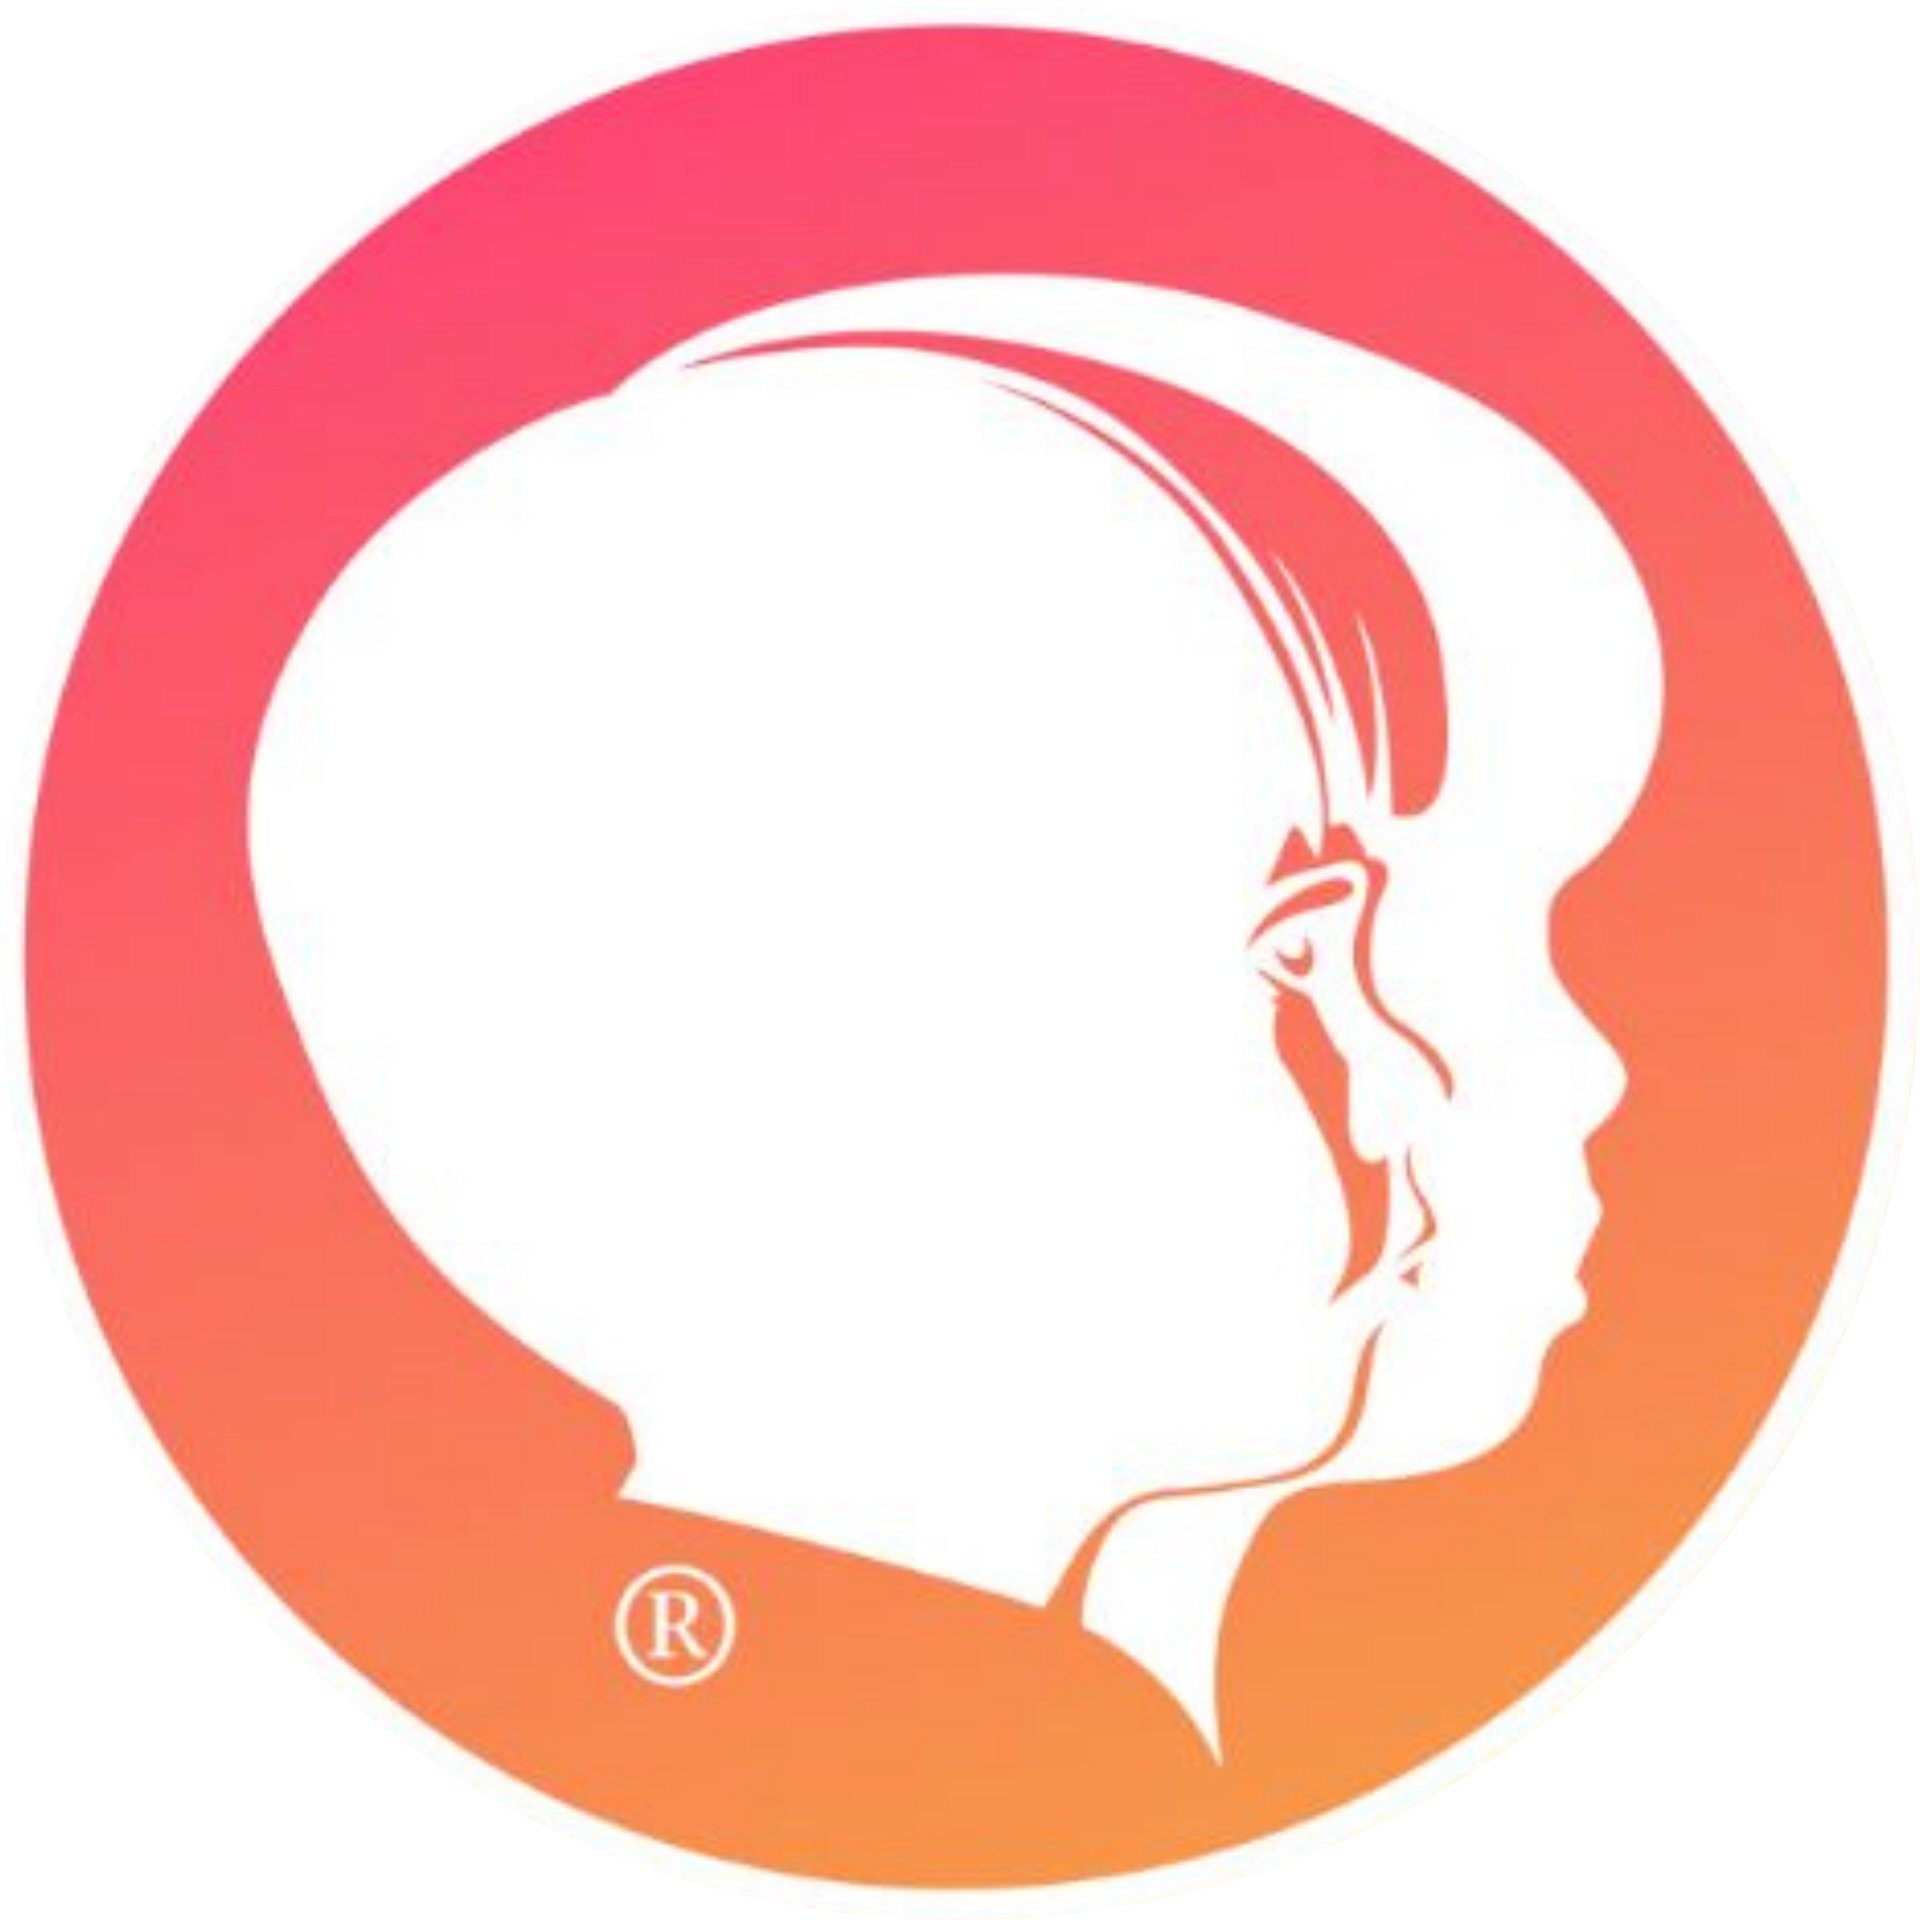 The Pink Orange Gradient CEF Head logo